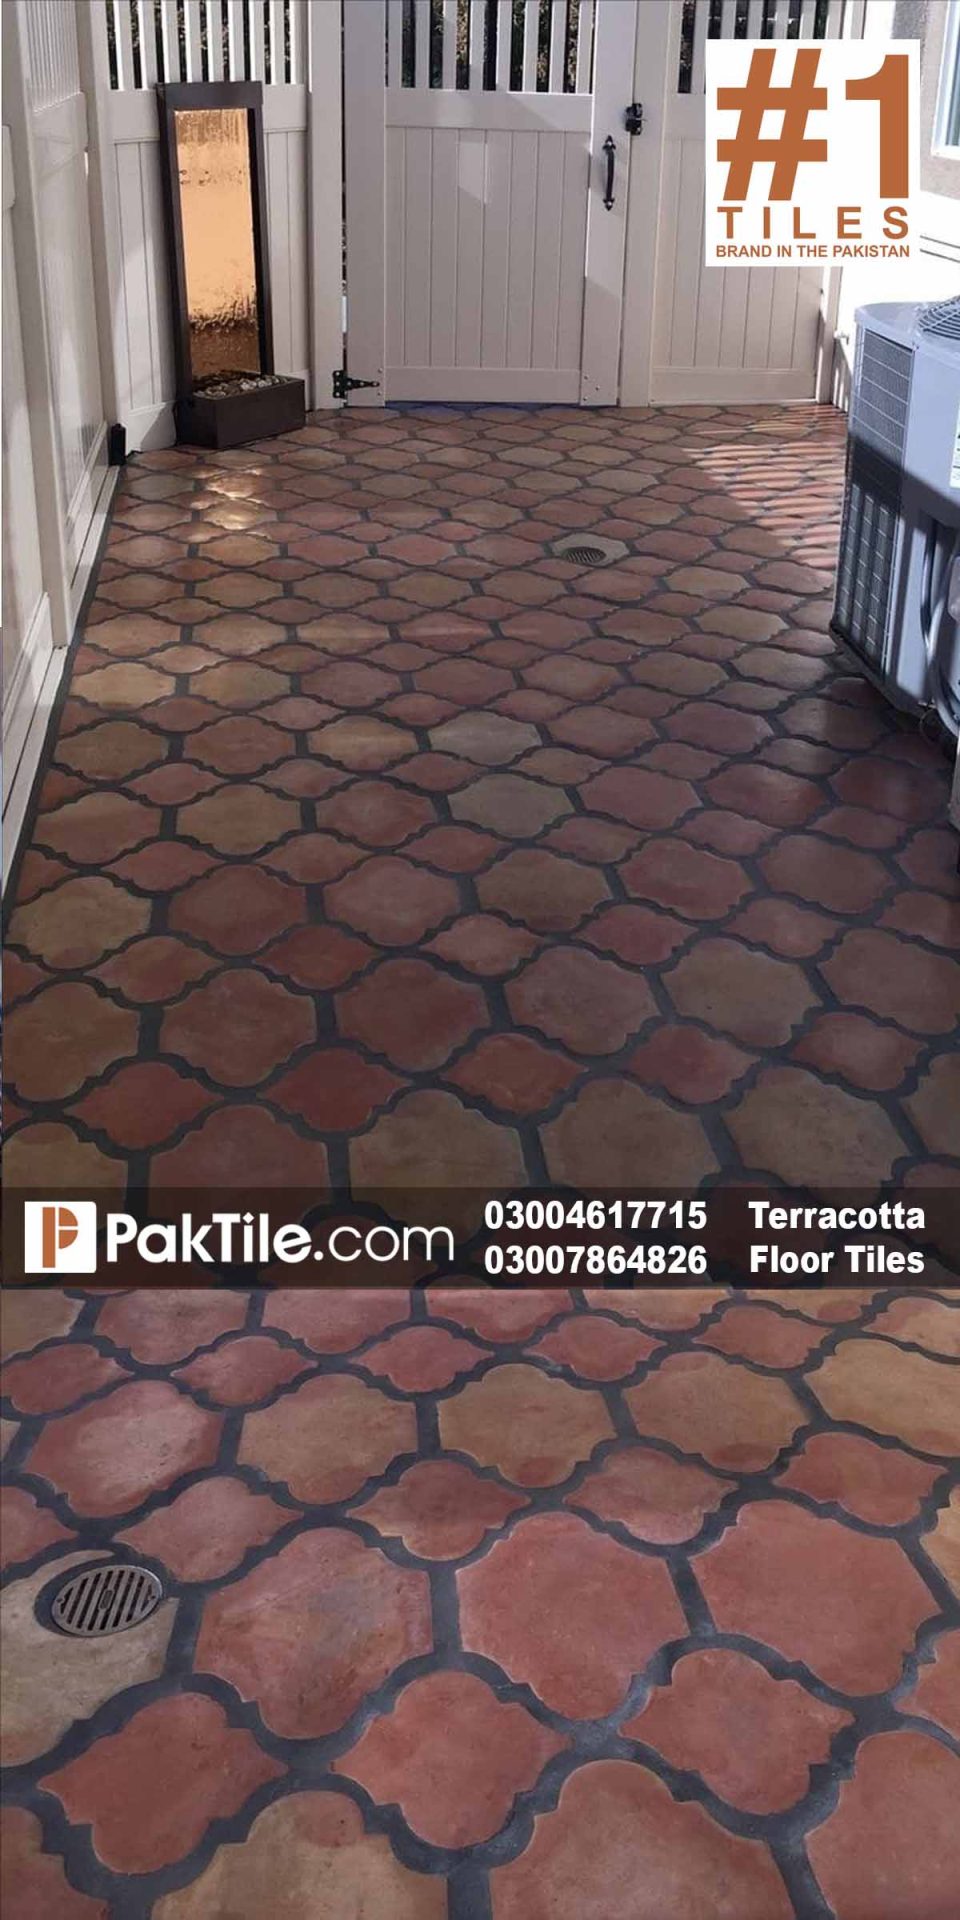 Pak Clay Terracotta Floor Tiles Price in Pakistan